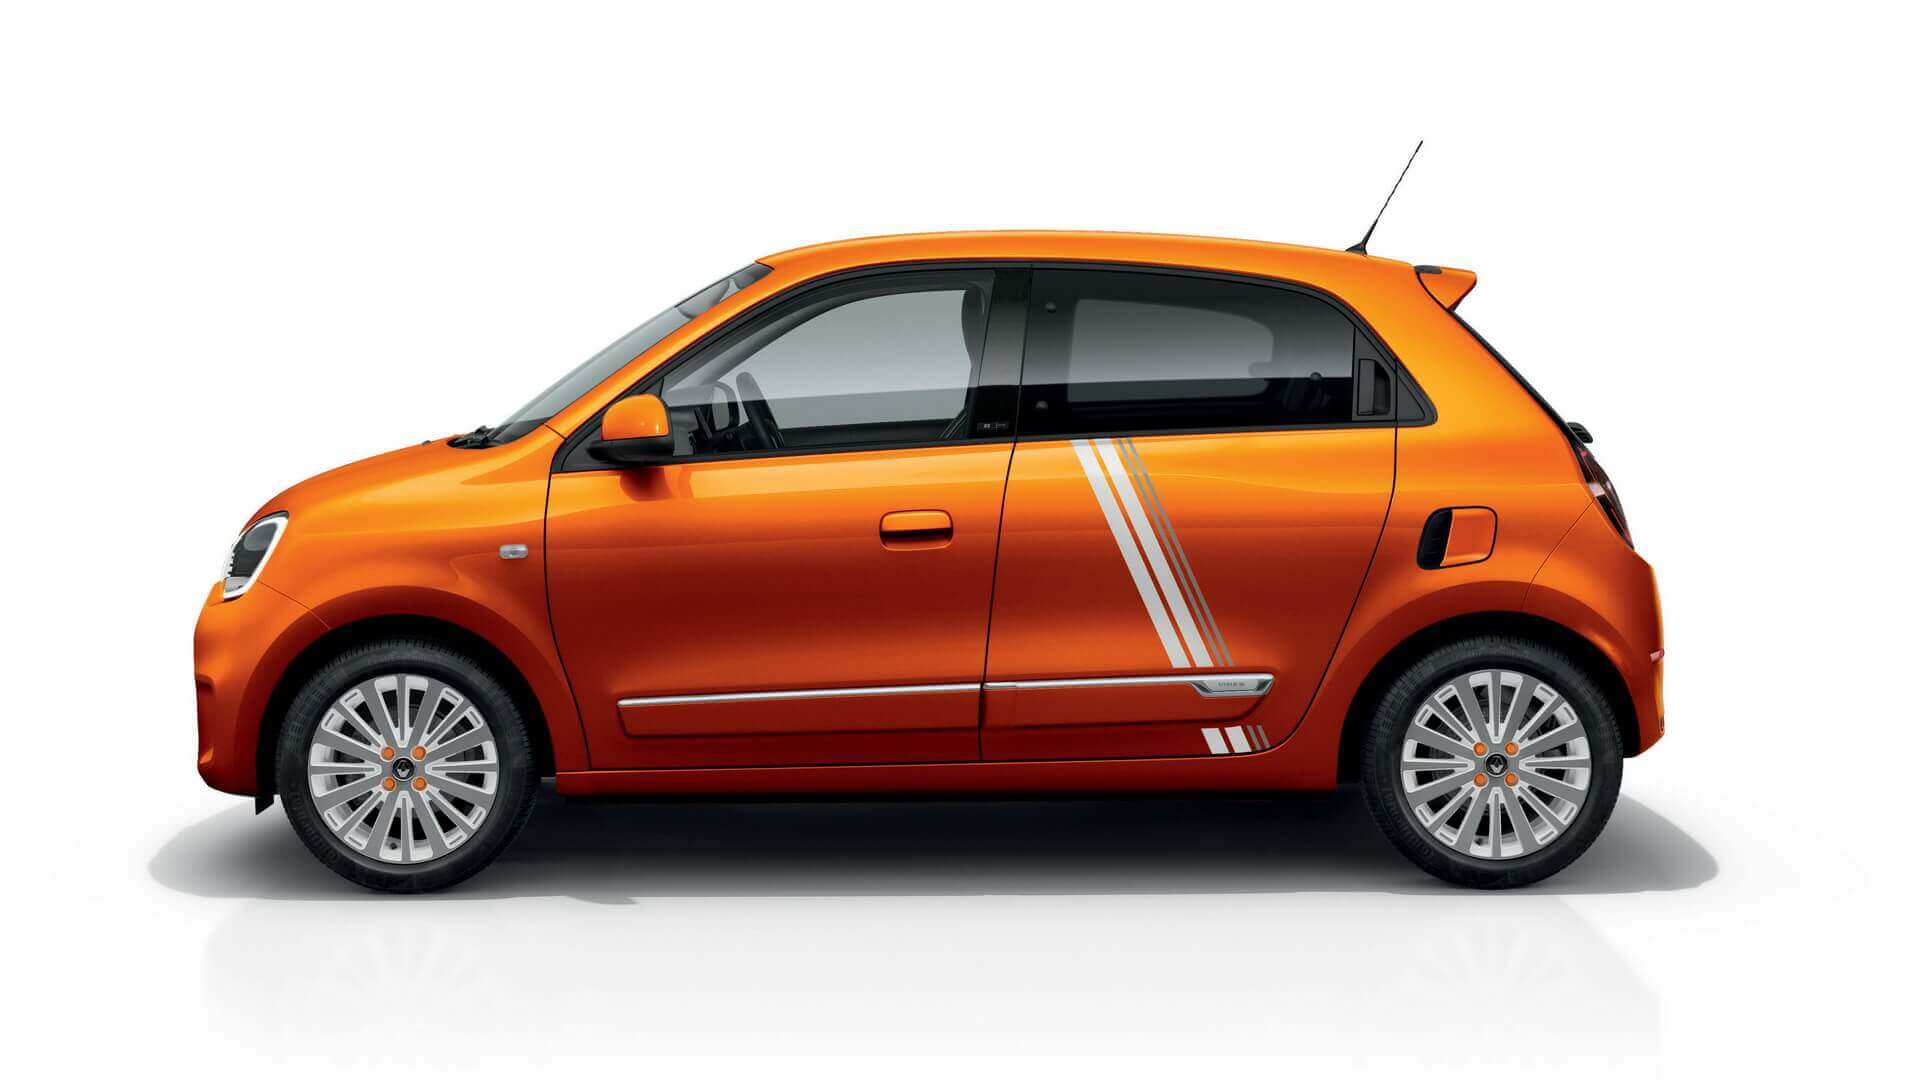 Лимитированная серия Twingo Z.E. будет доступна с новым эксклюзивными цветом Valencia Orange